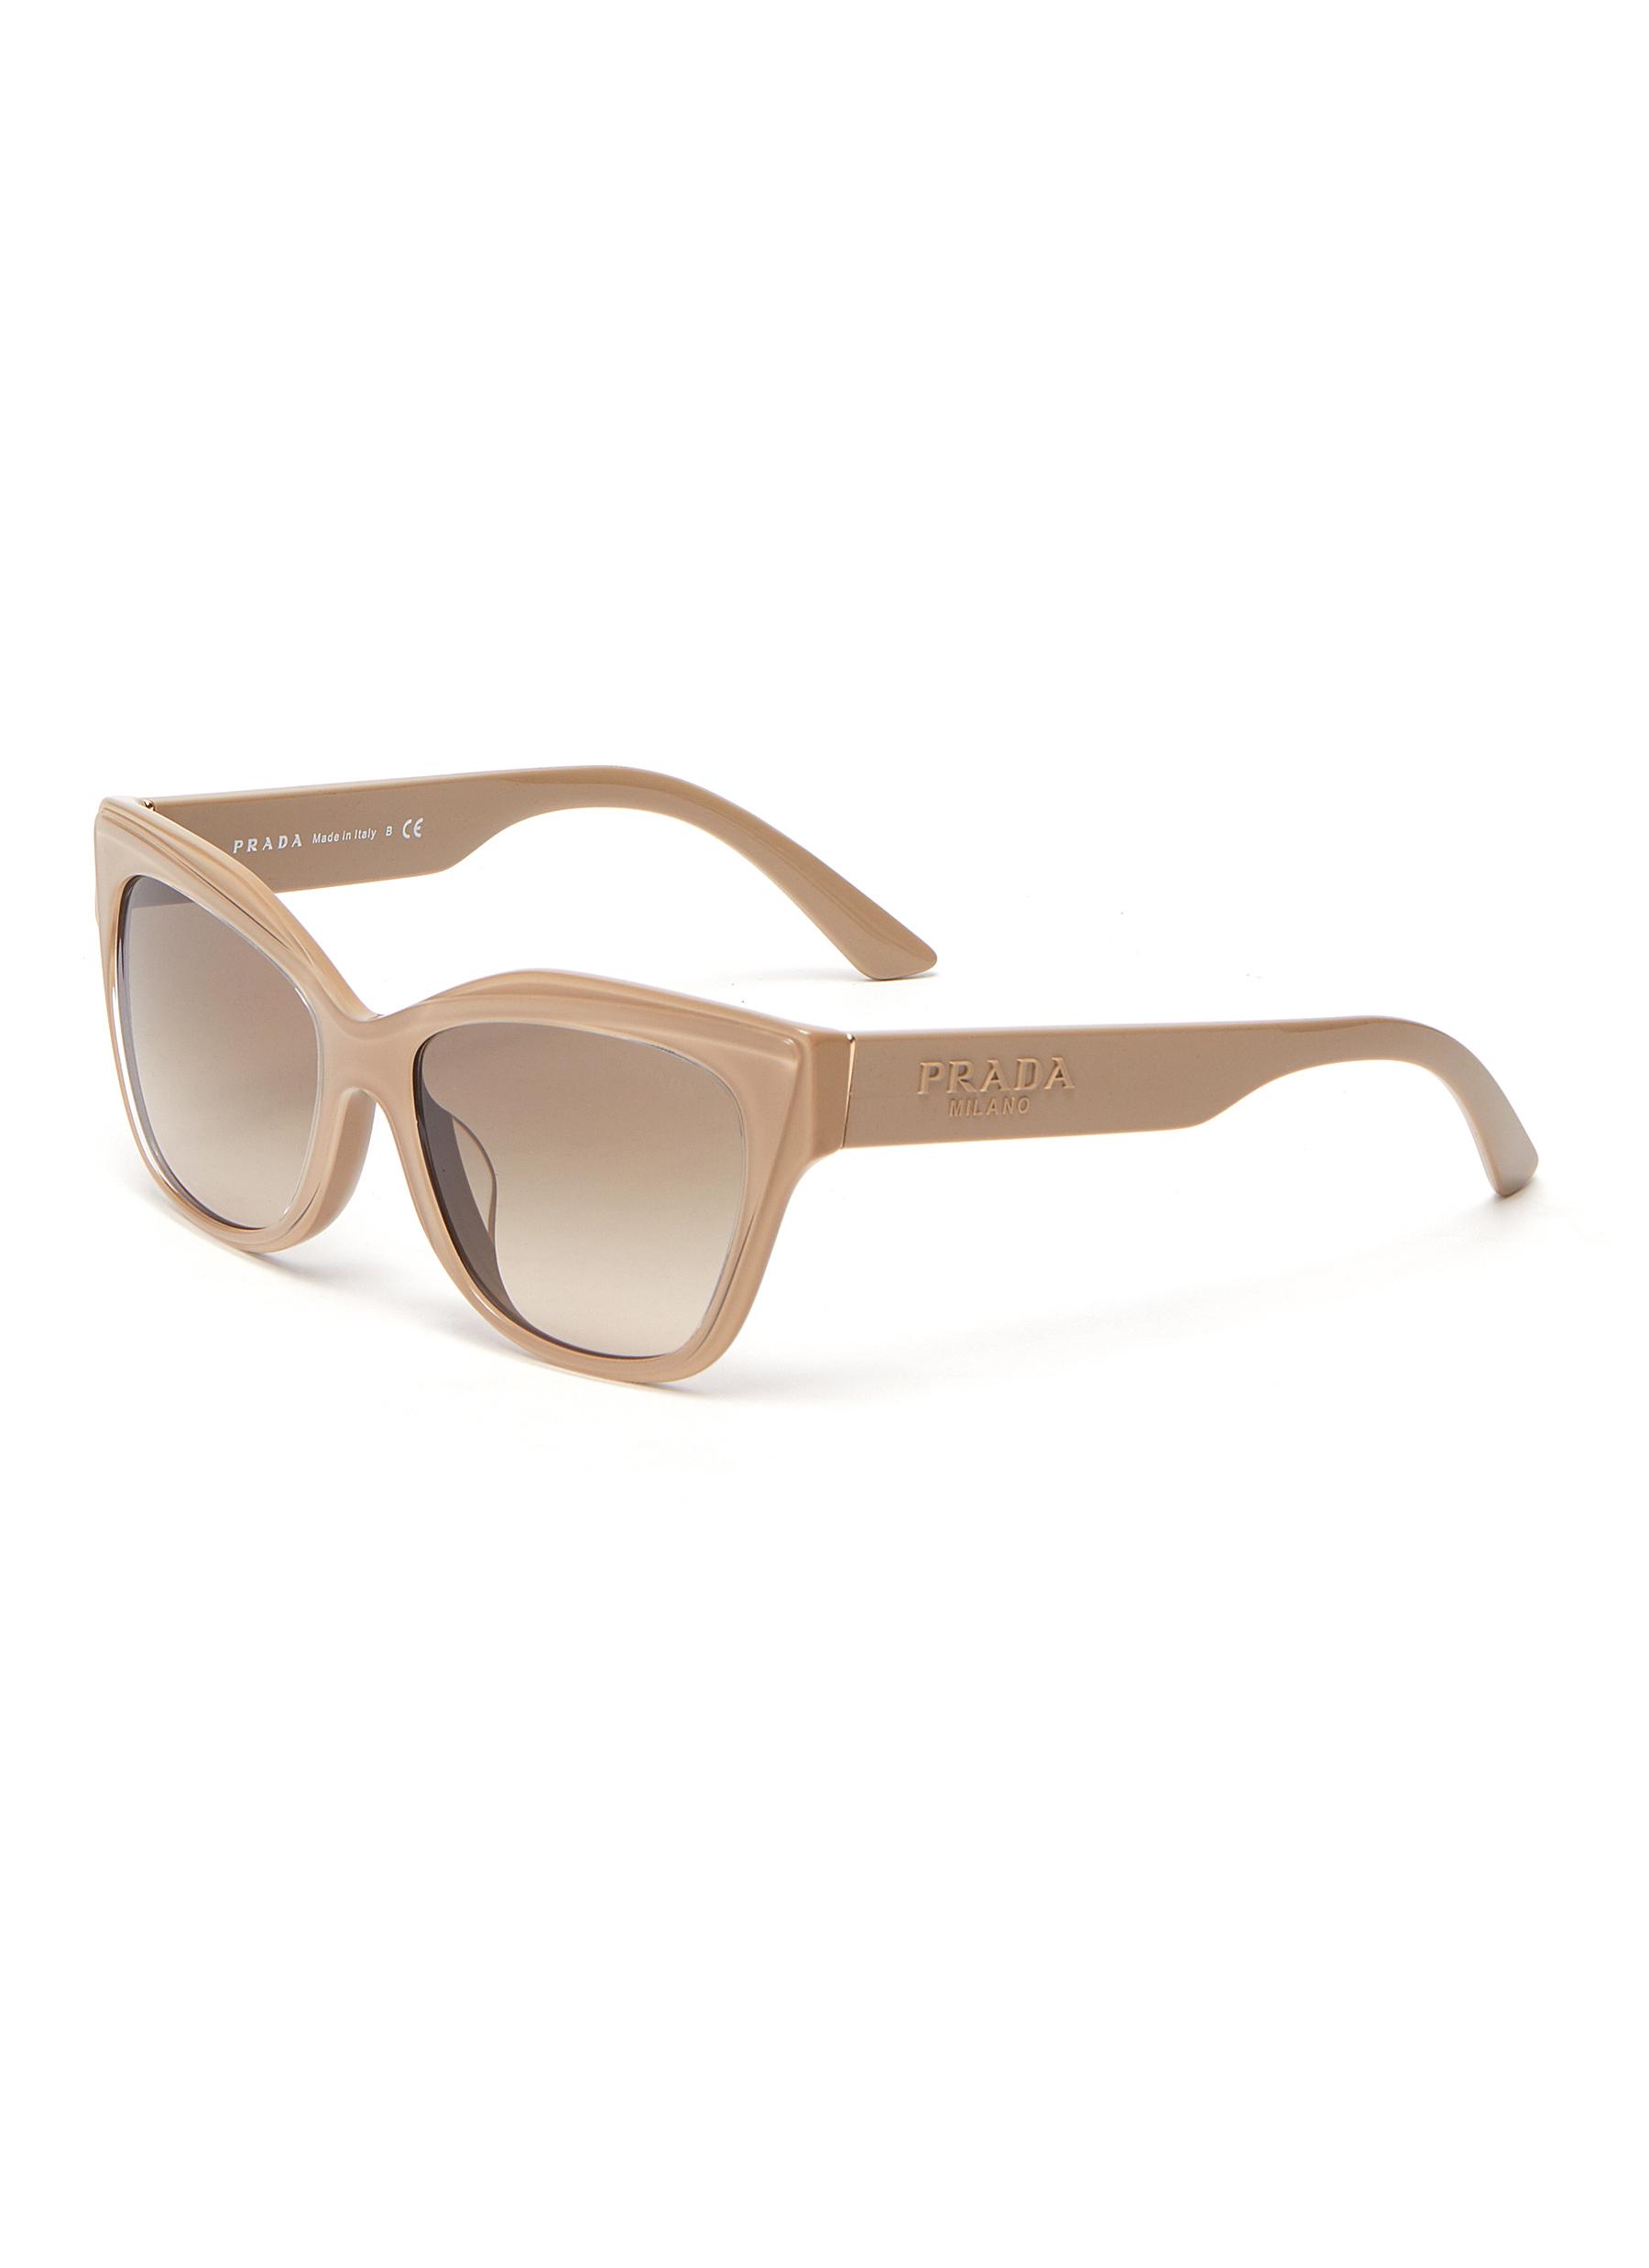 prada white frame sunglasses